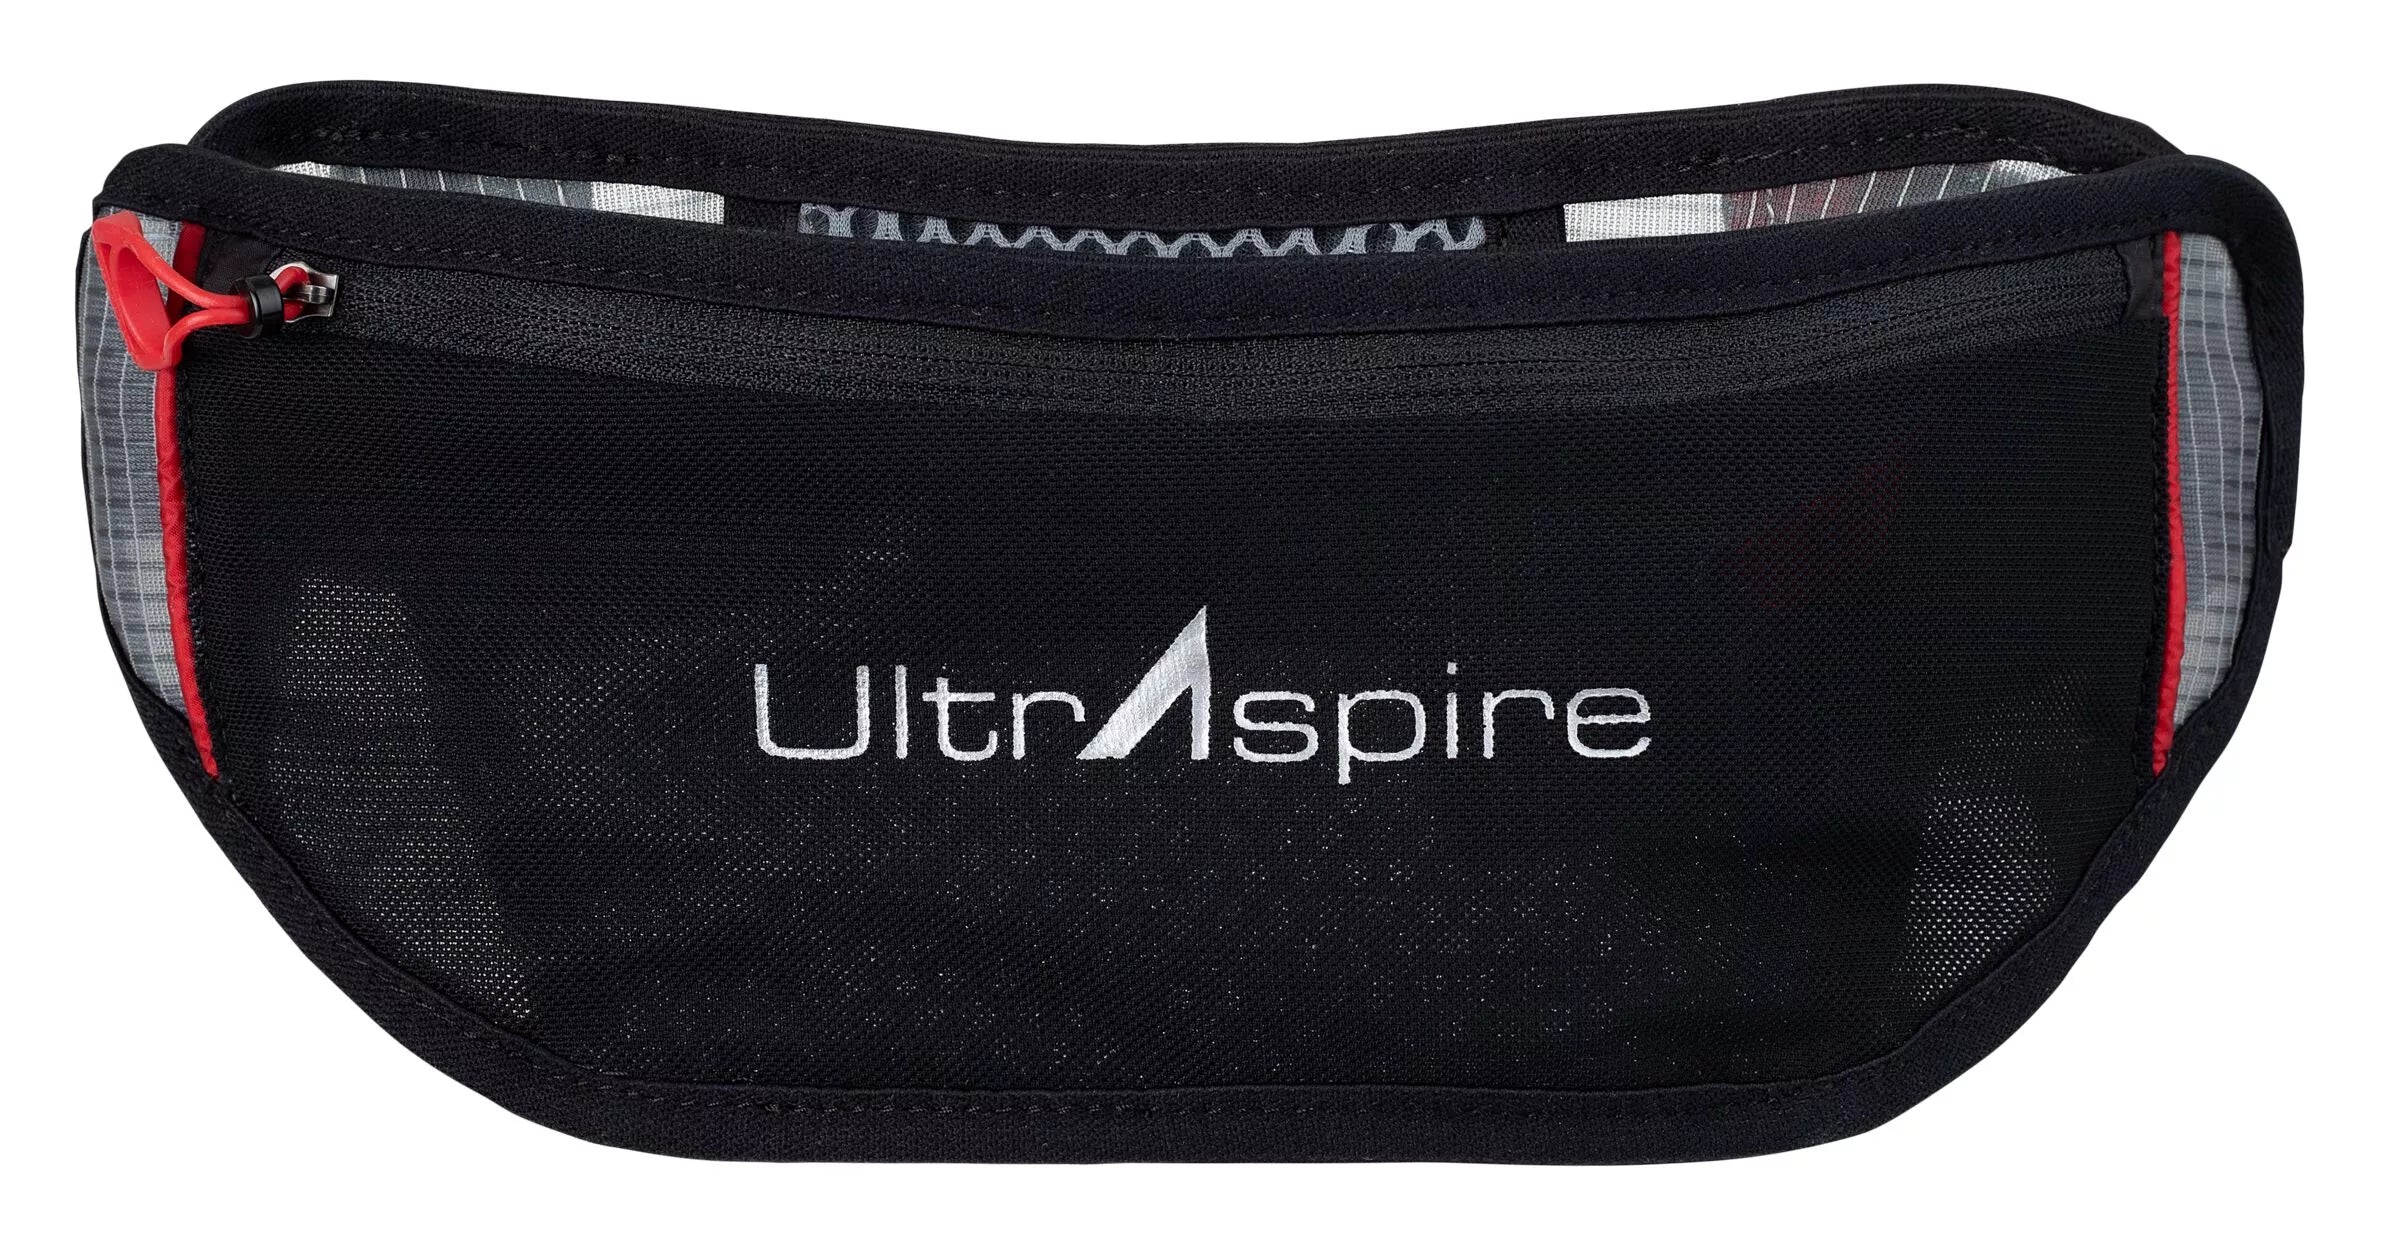 UltrAspire Lumen 600 3.0 Waist Light Review – iRunFar